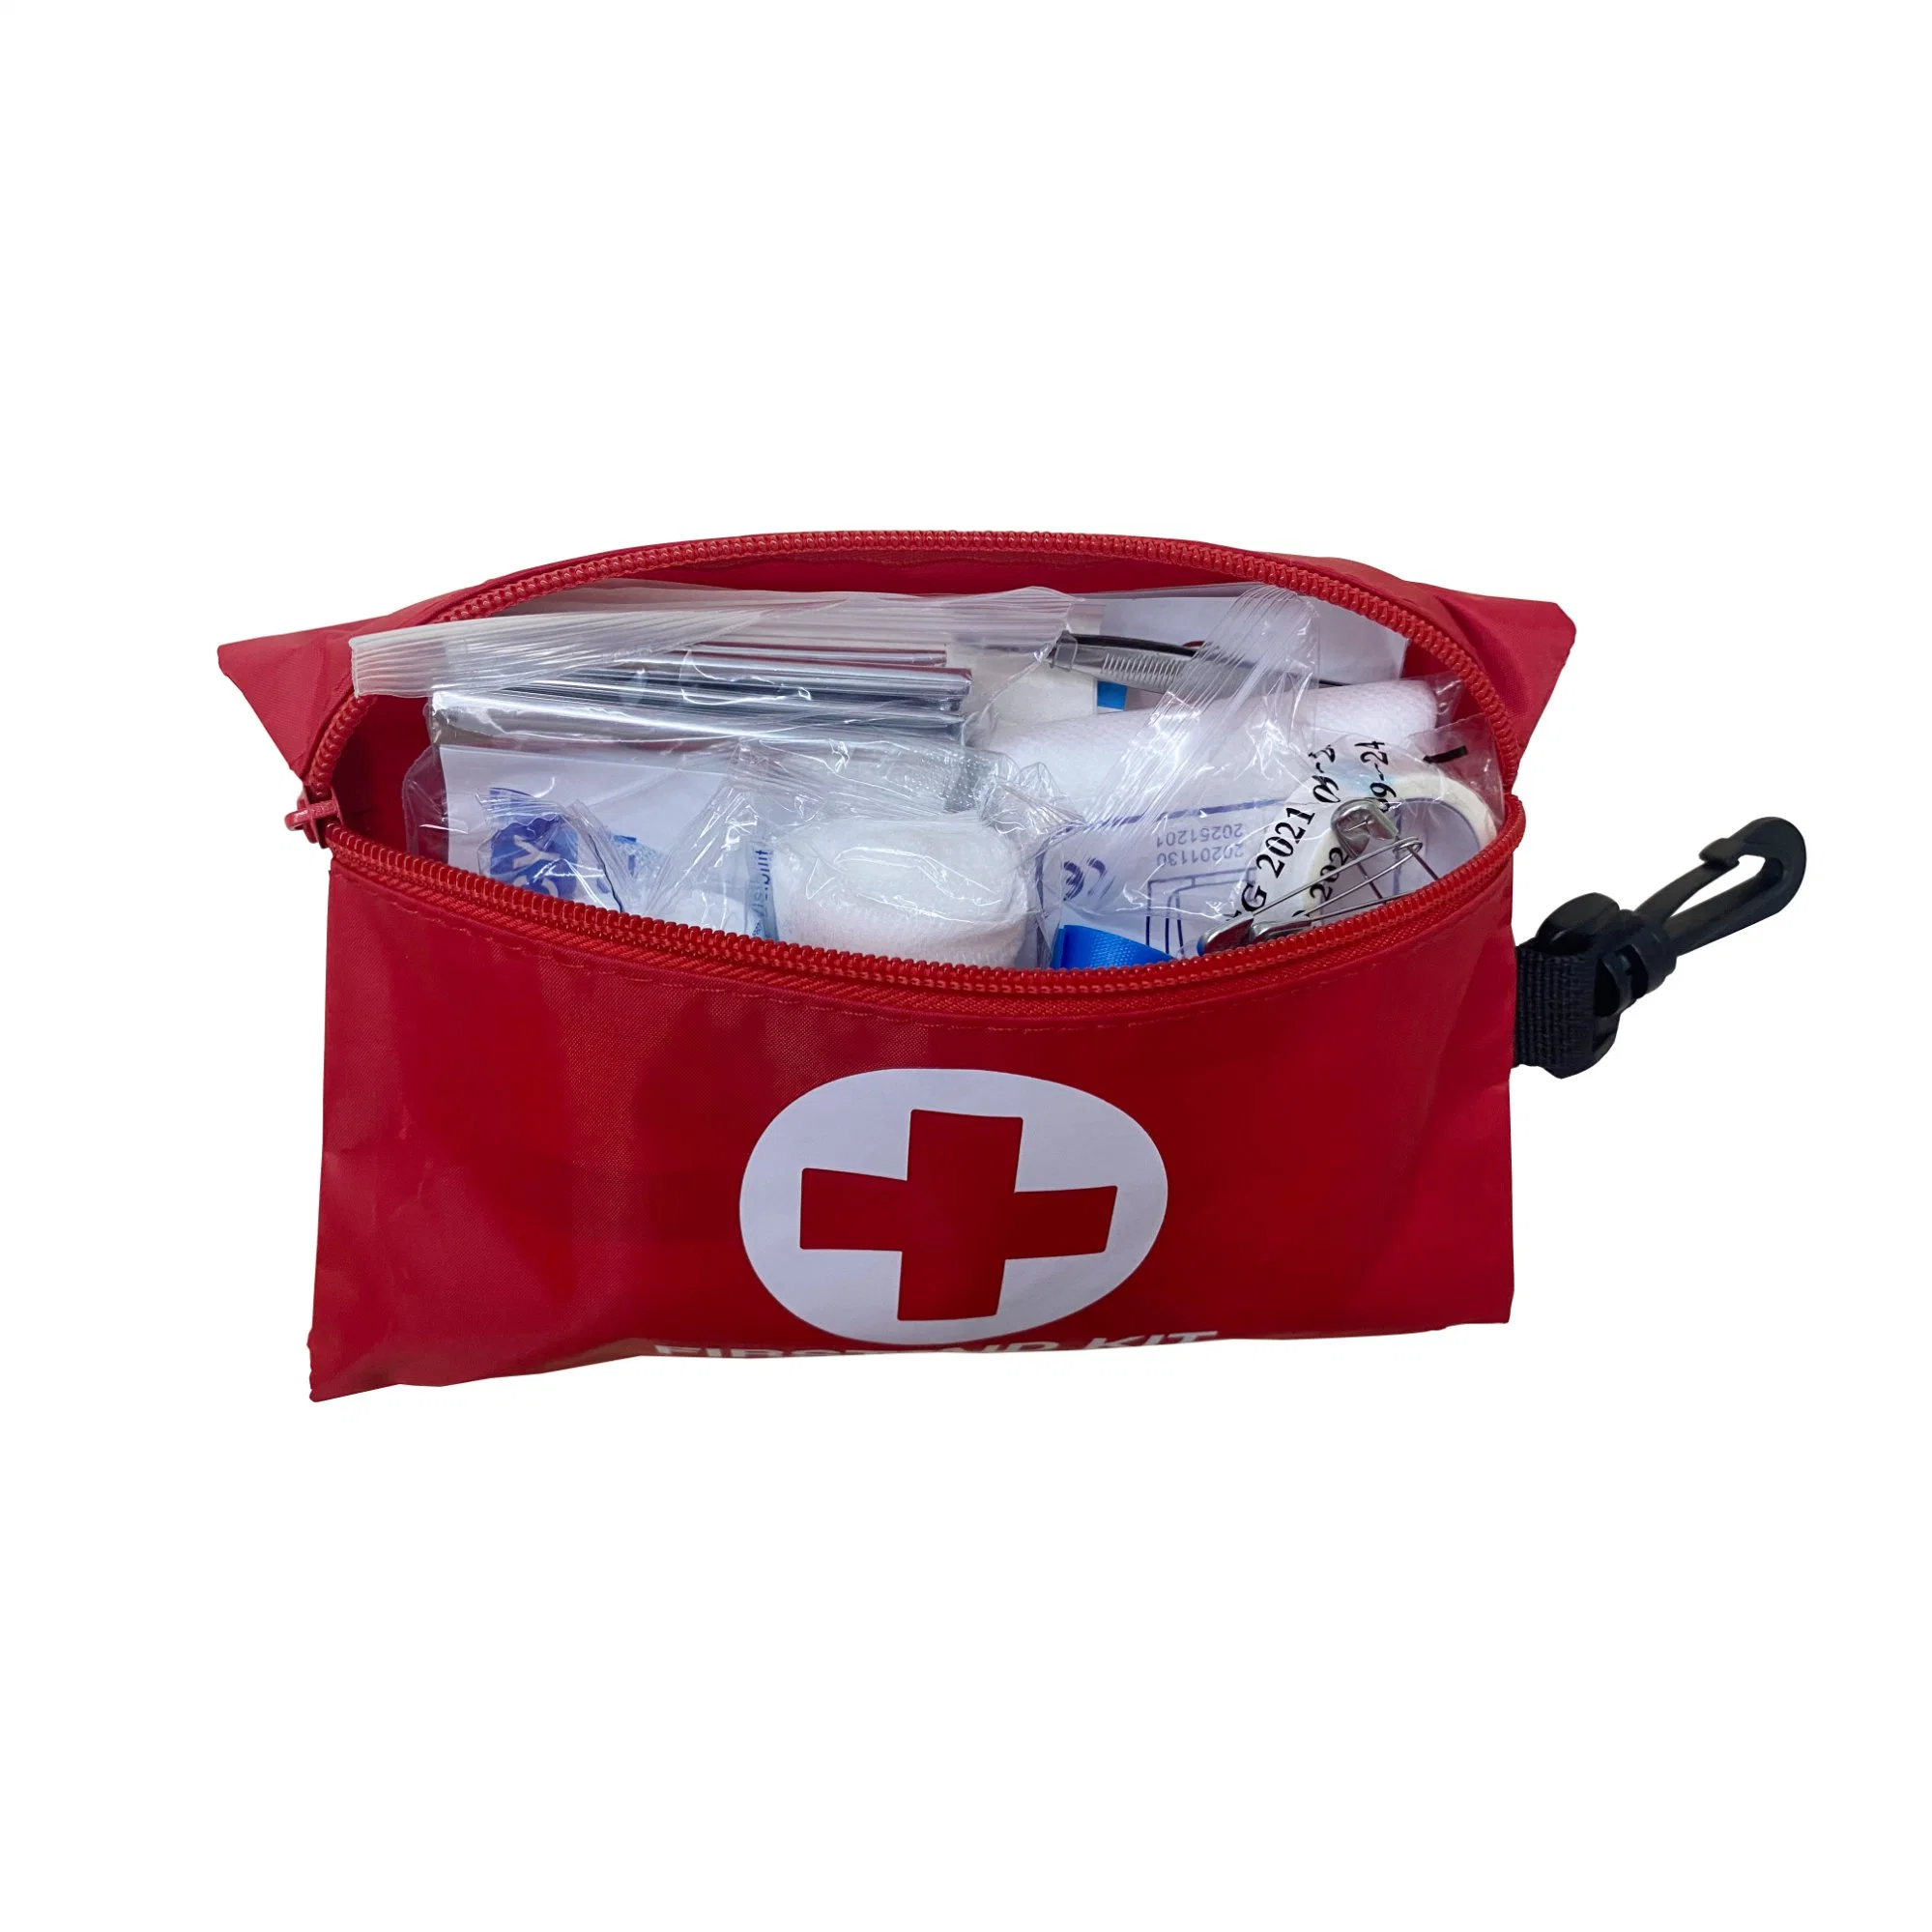 Well-Furnished First Aid Responder Kit Emergency EMT Trauma Bag